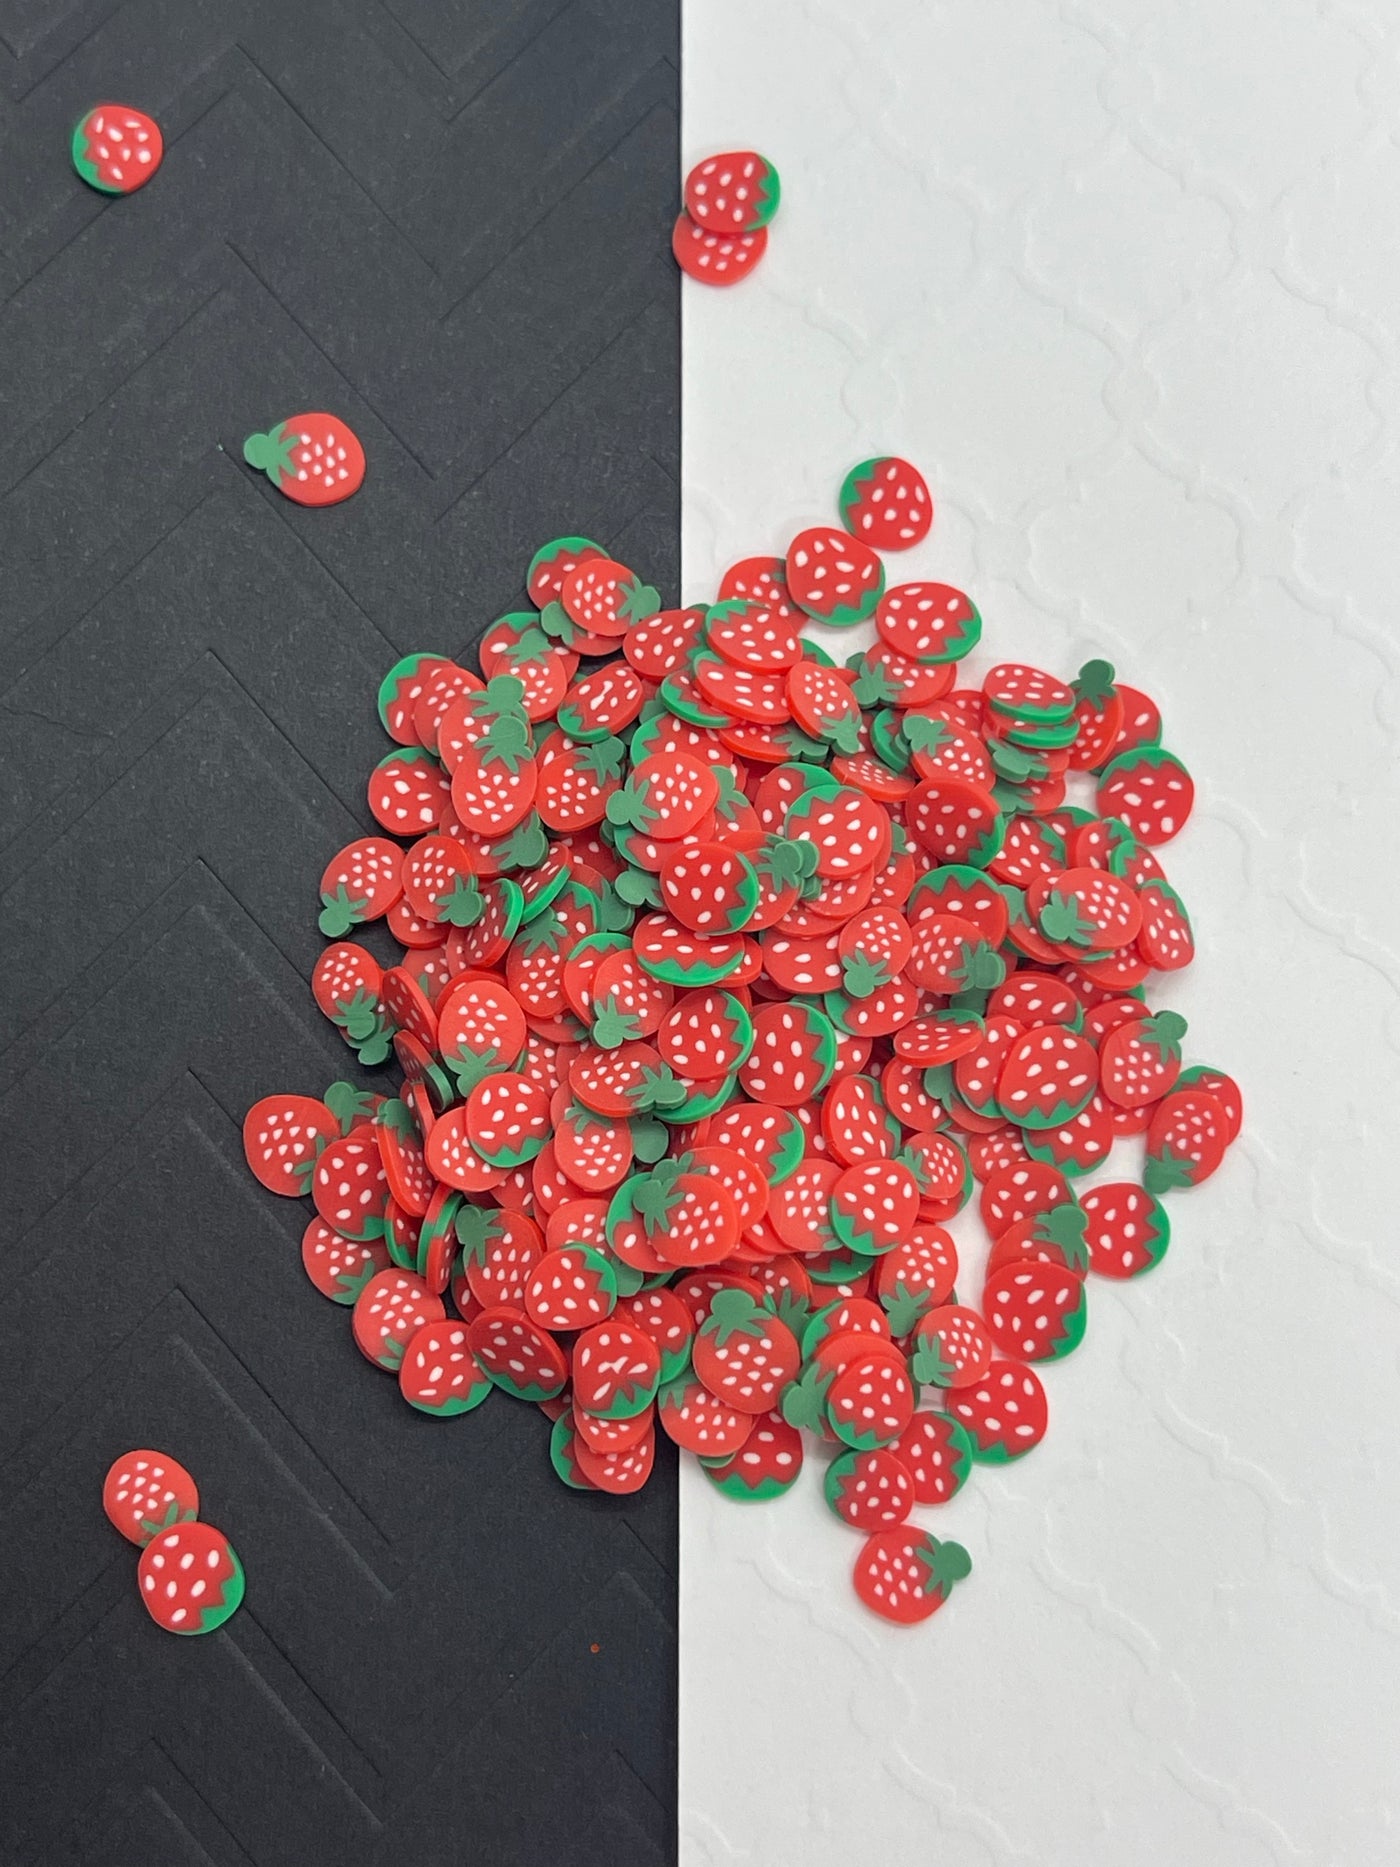 Strawberry 🍓 Sprinkles